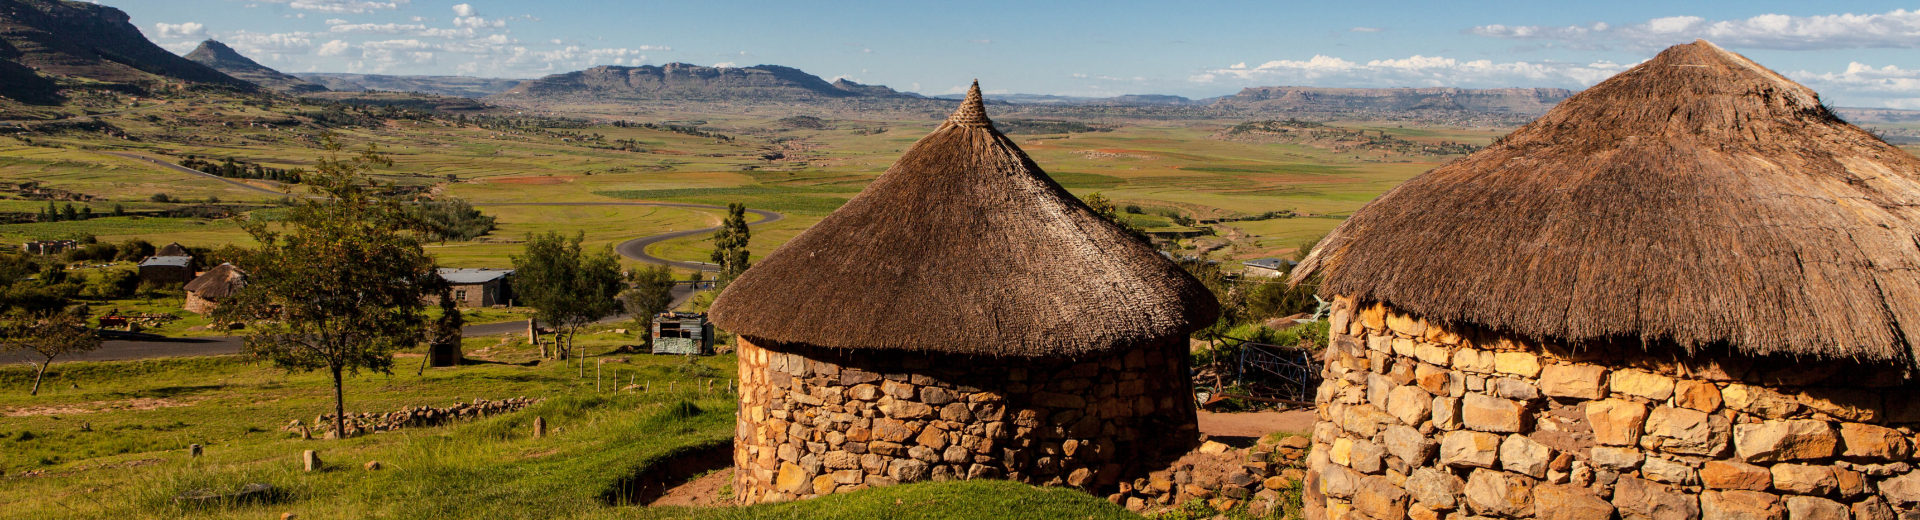 Groepsreizen naar Lesotho